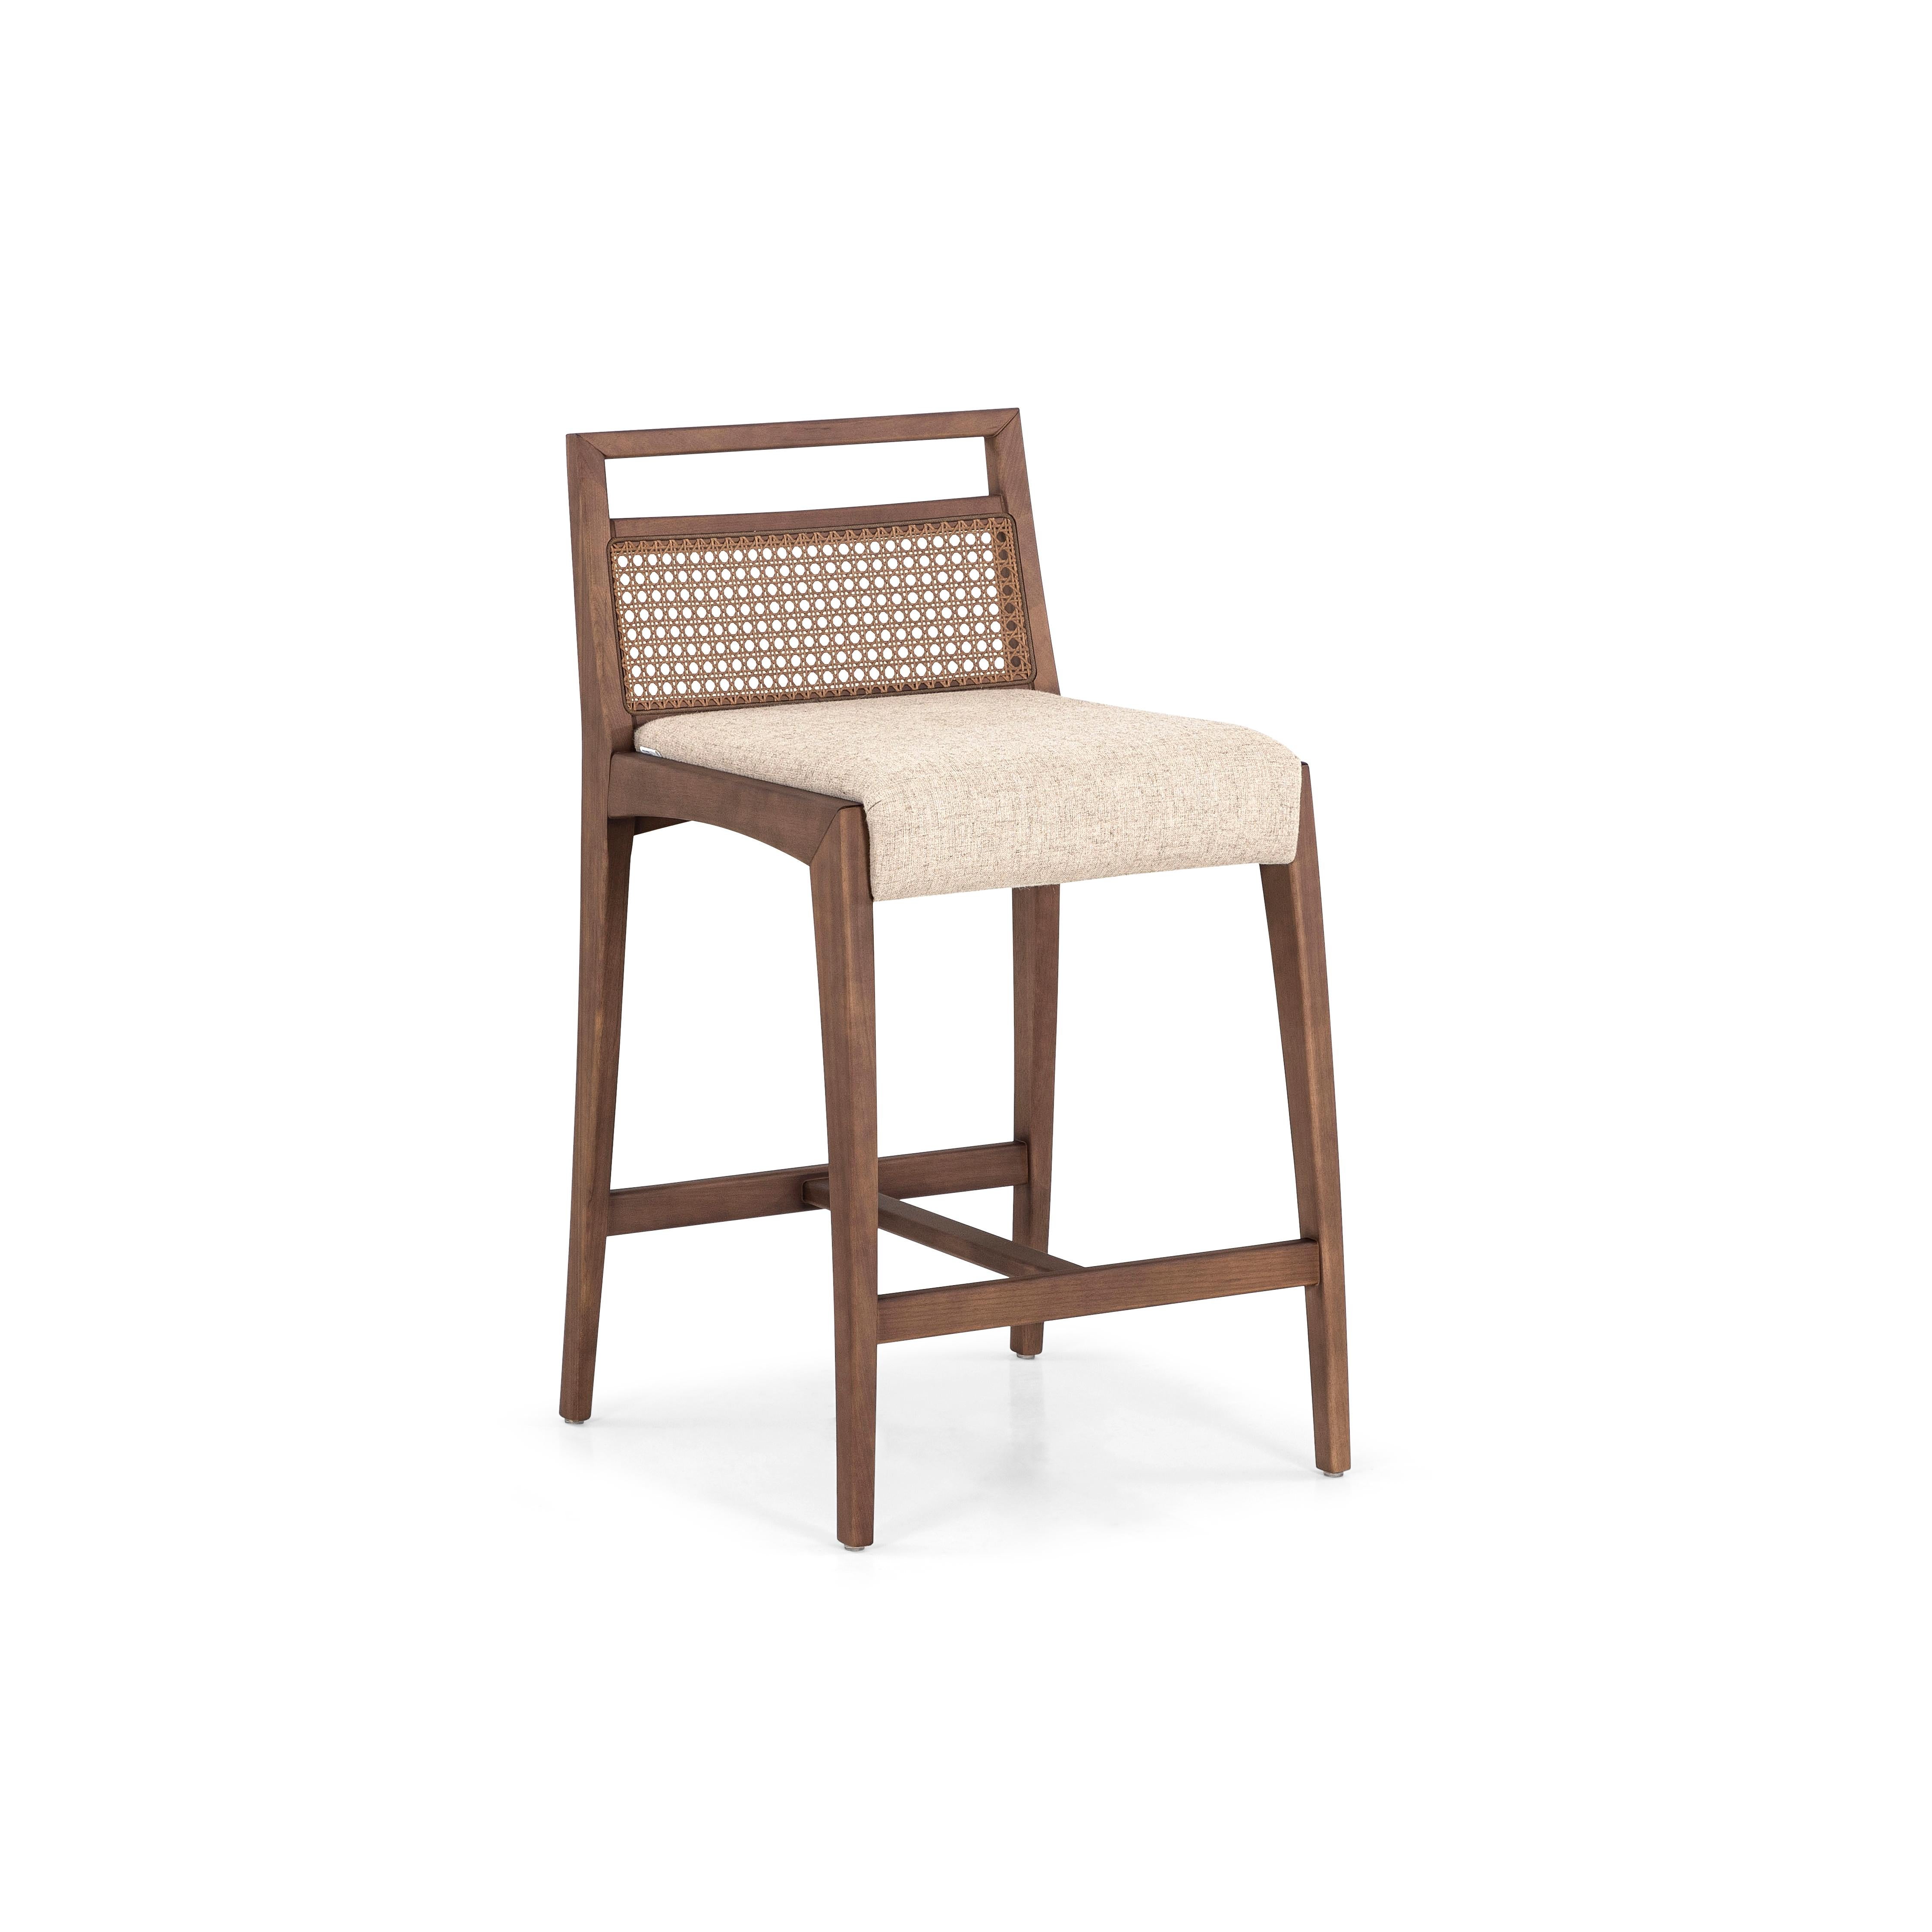 Le tabouret de comptoir Sotto est une pièce conçue avec une hauteur plus élevée pour être utilisée sur un comptoir ou une table haute. Cette chaise présente des caractéristiques frappantes, où la résistance et la délicatesse se rencontrent. Conçu